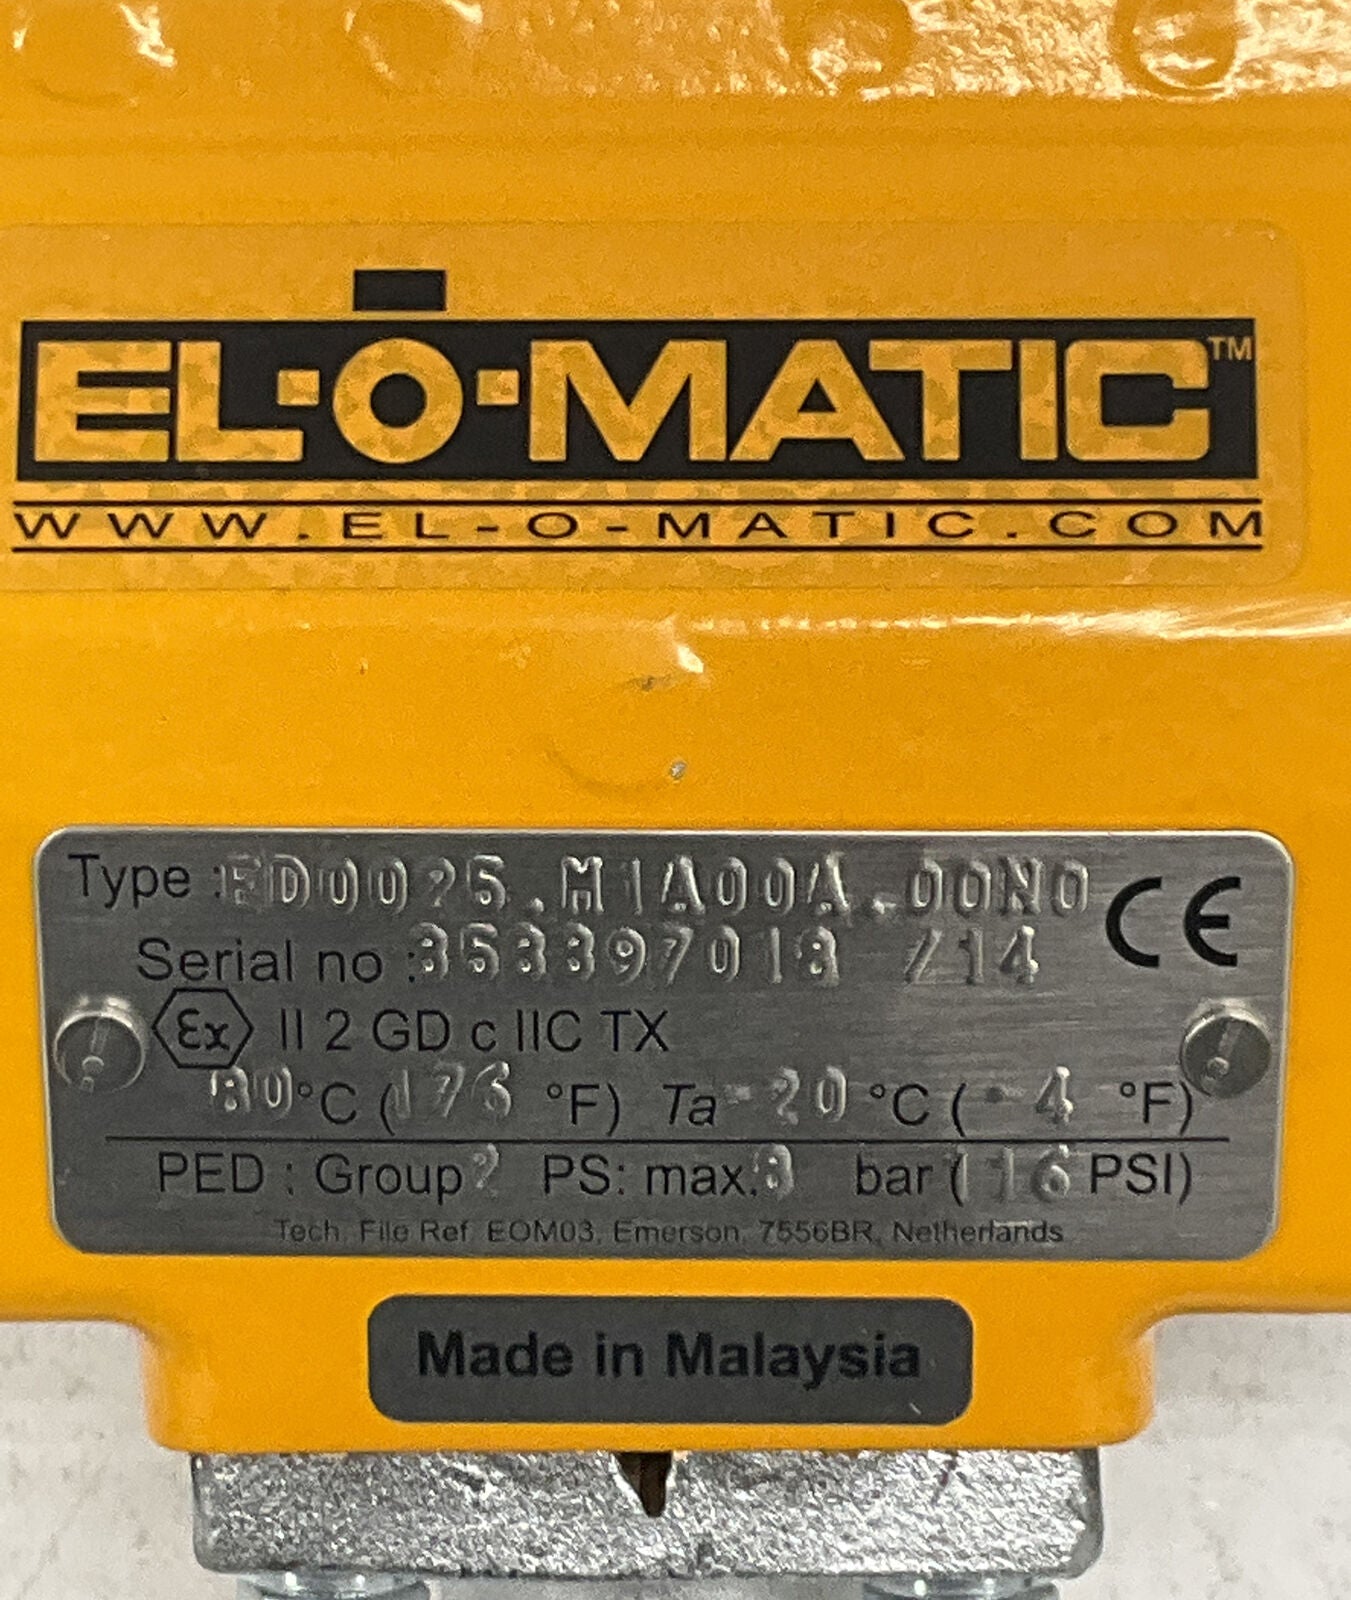 EL-O-MATIC ED0025.M1A00A.00N0 New 2" Valve 24VDC Pneumatic Actuator (BK131) - 0